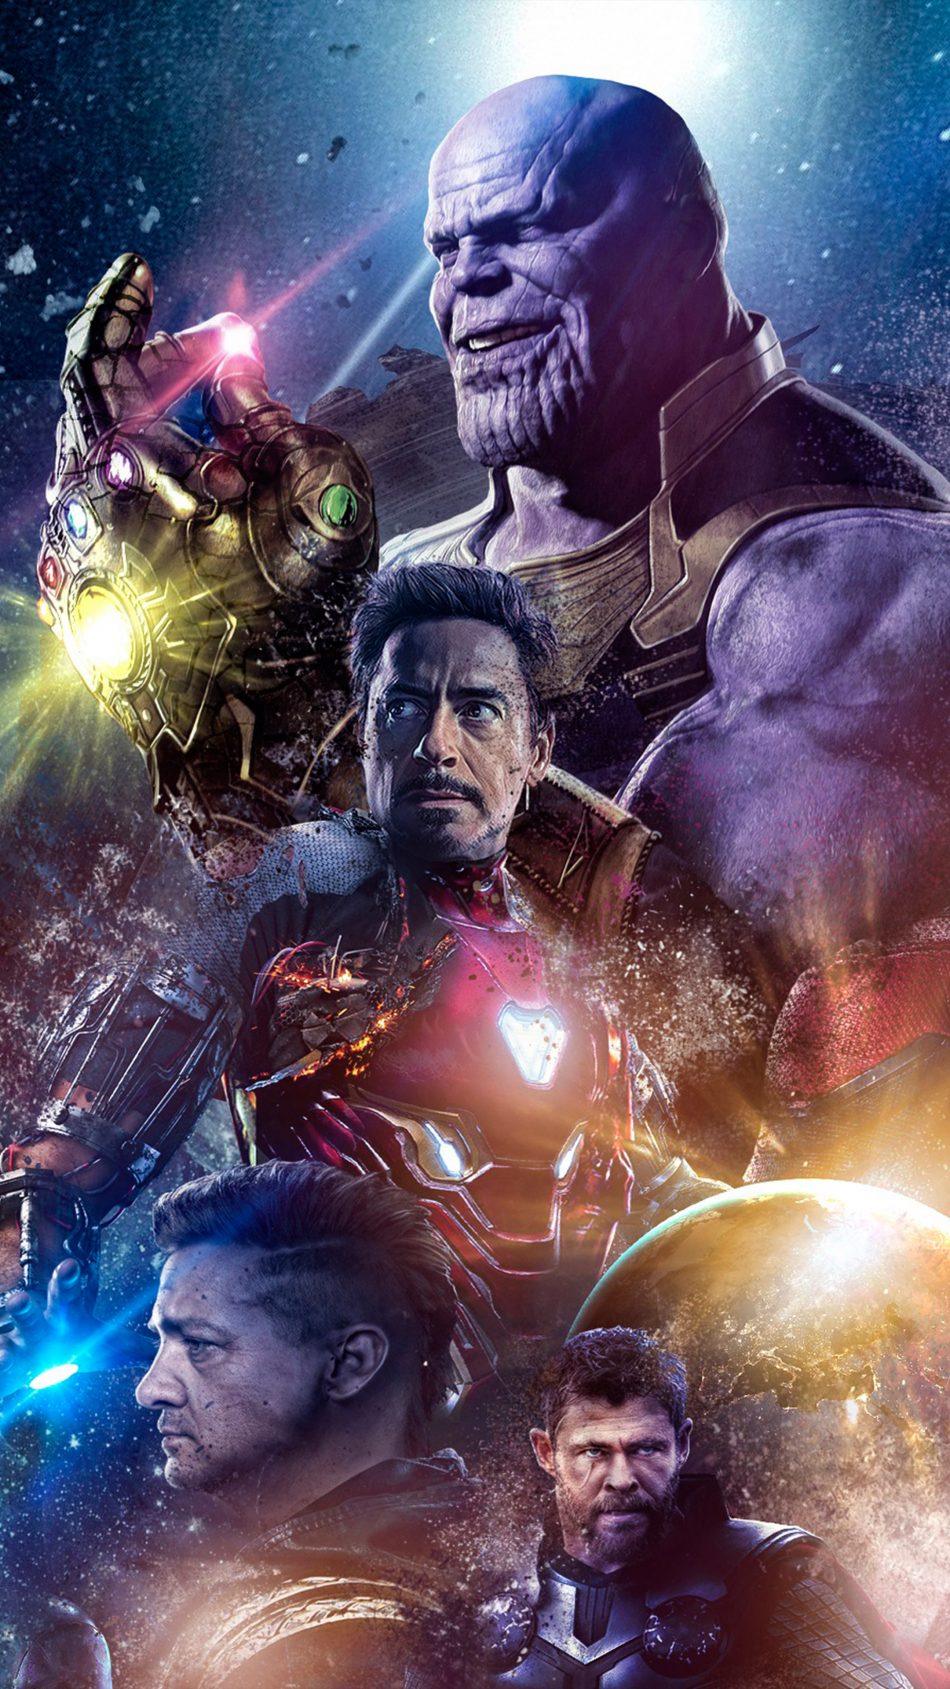 Avengers Endgame 2019 4k Ultra Hd Mobile Wallpaper - Avengers Endgame - HD Wallpaper 